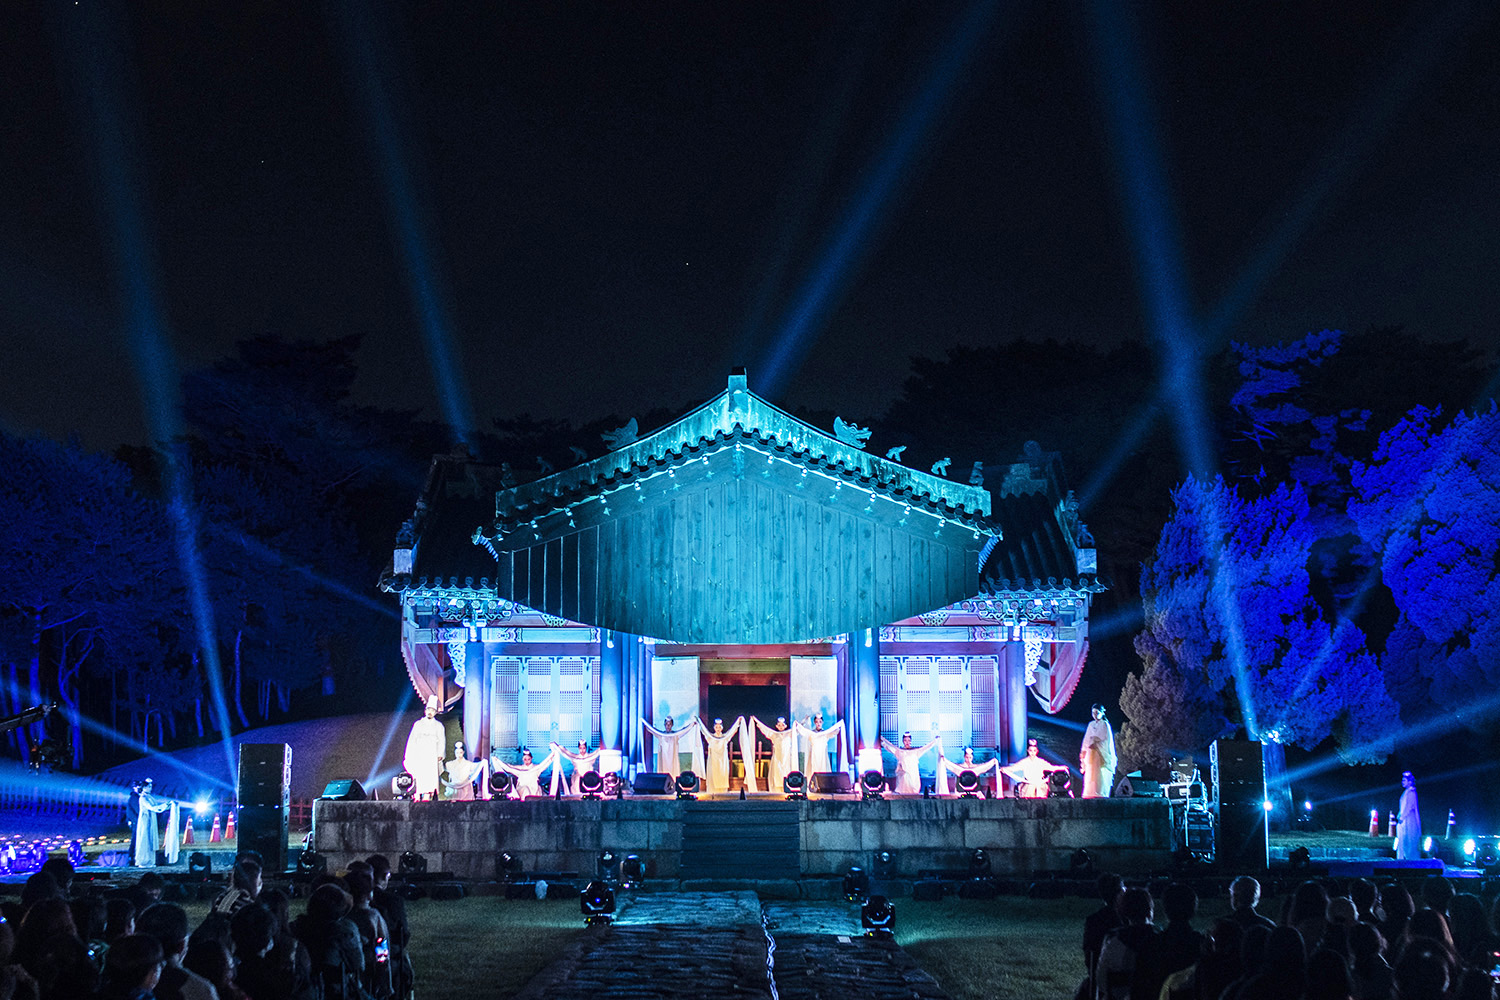 개막제에서 선보인 ‘신들의 정원’ 공연. 류재민 기자